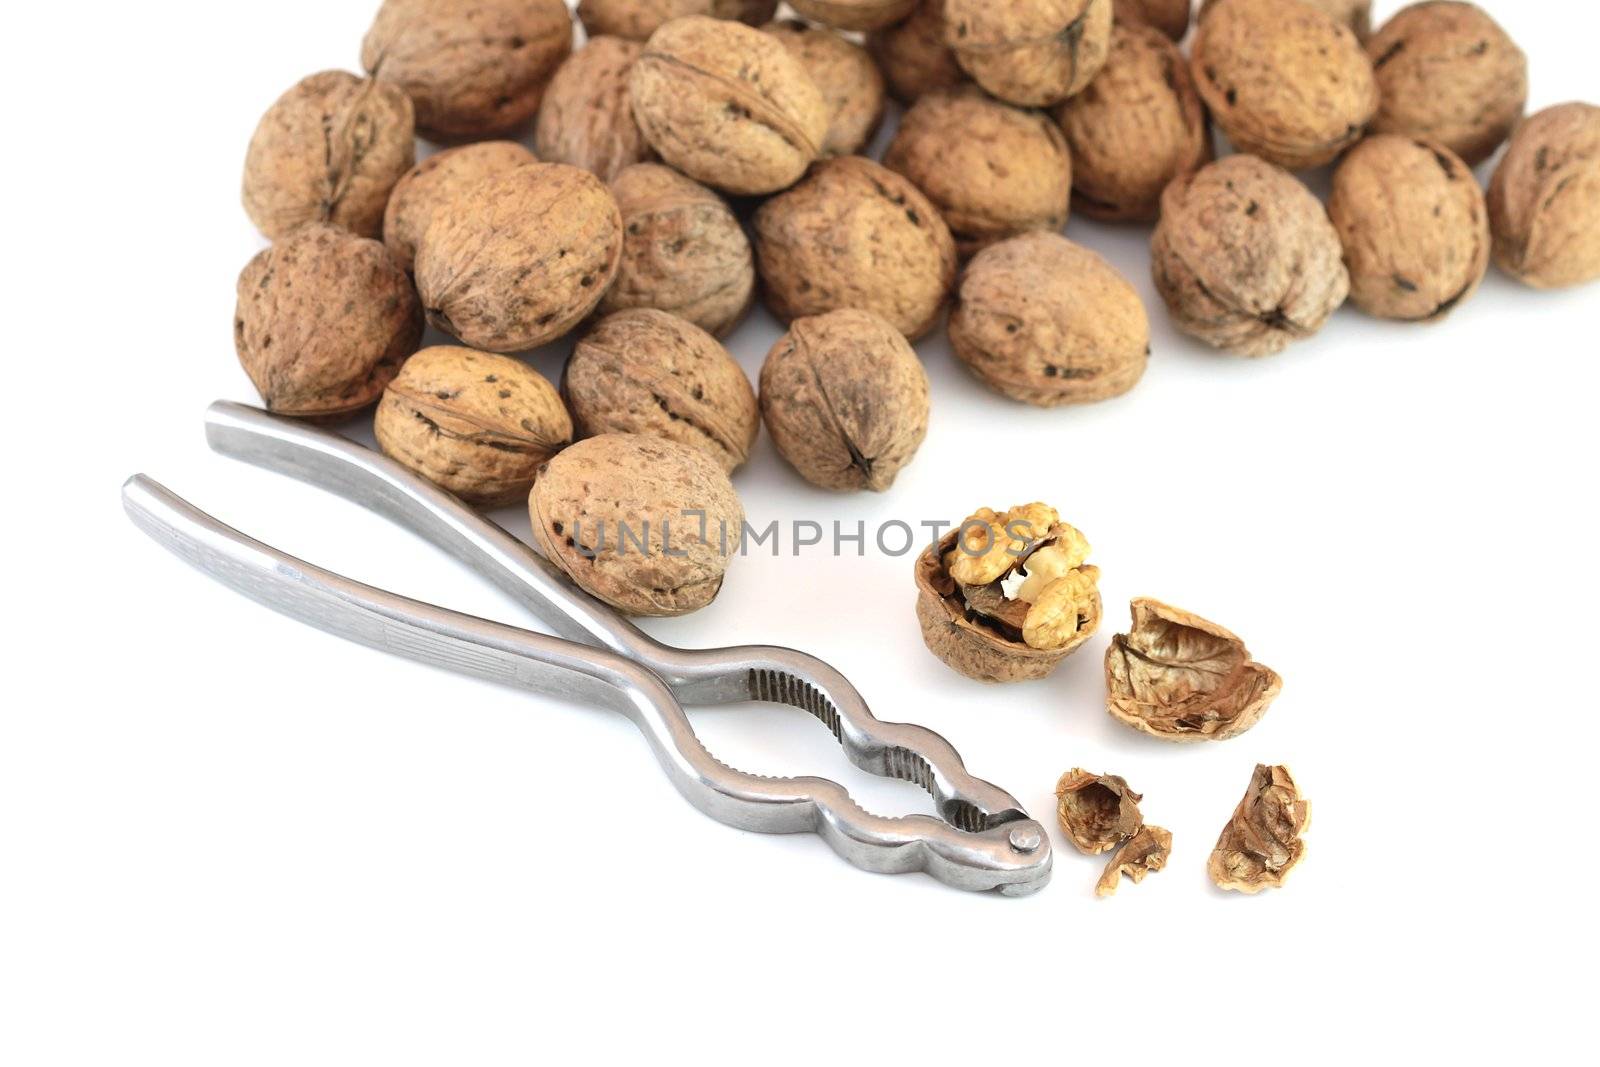 Walnuts with nutcracker by Gbuglok